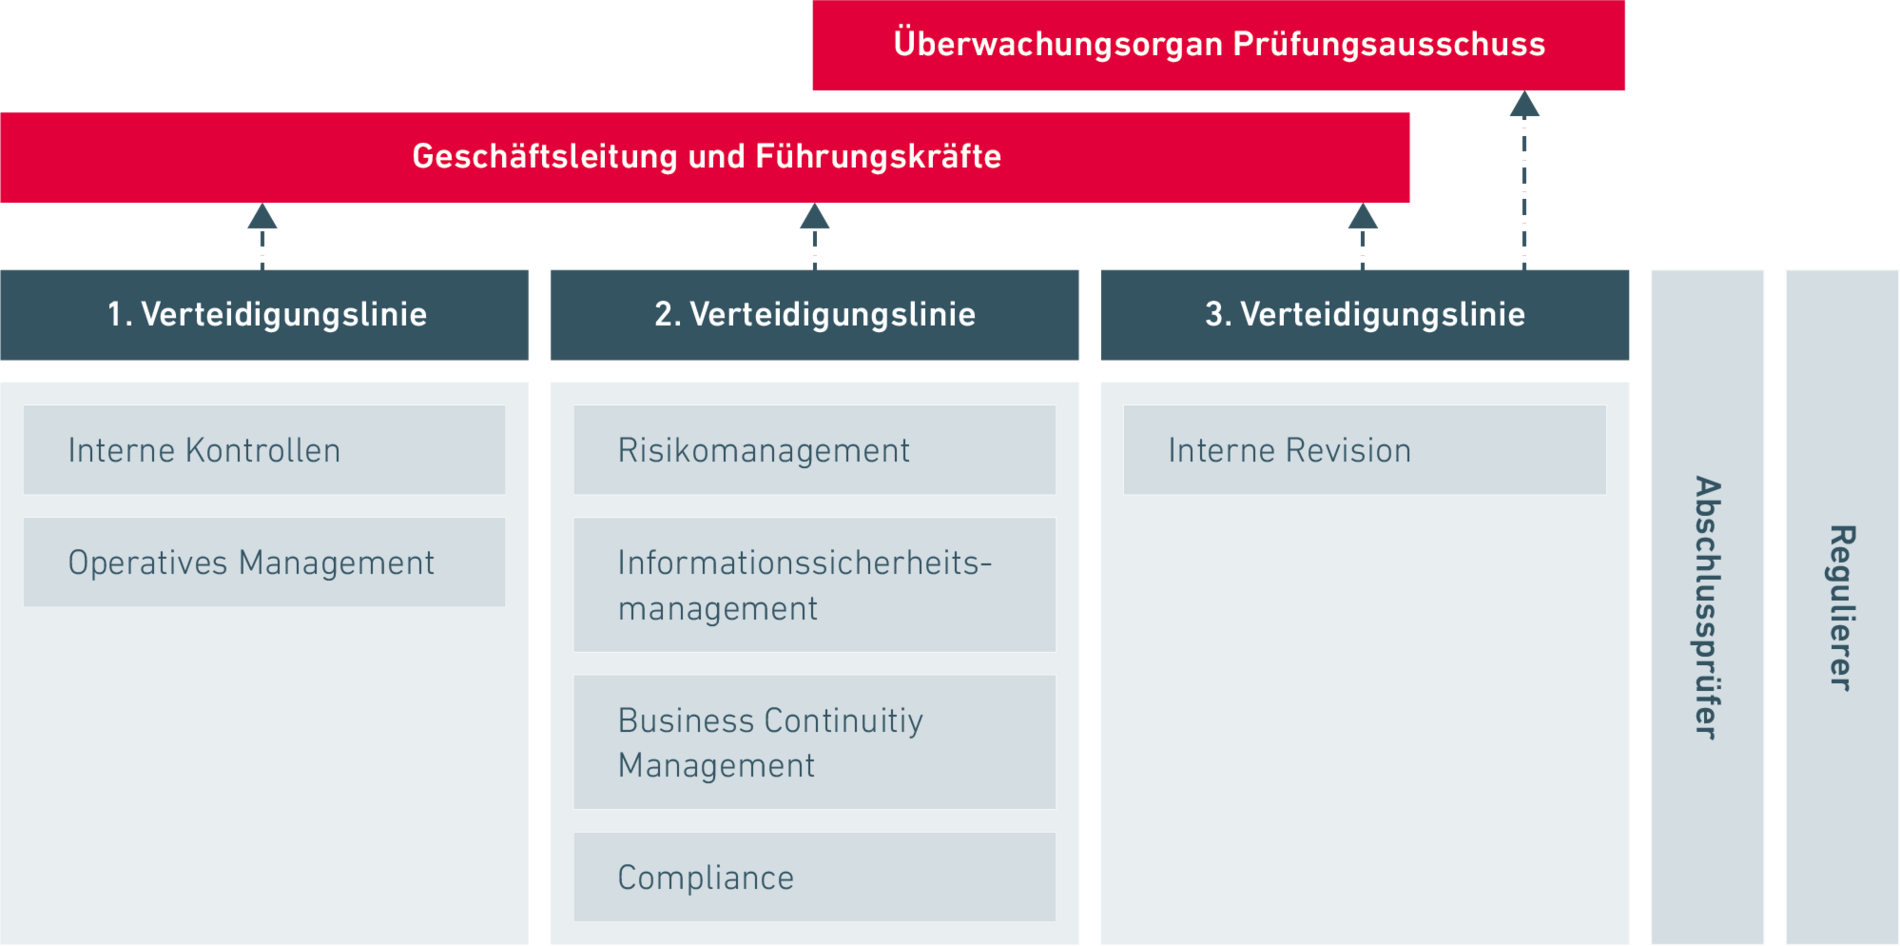 Das Modell „Three Lines of Defense“ zeigt in diesem Zusammenhang die Organisation und Verantwortlichkeiten für das Risikomanagement in einem Unternehmen.